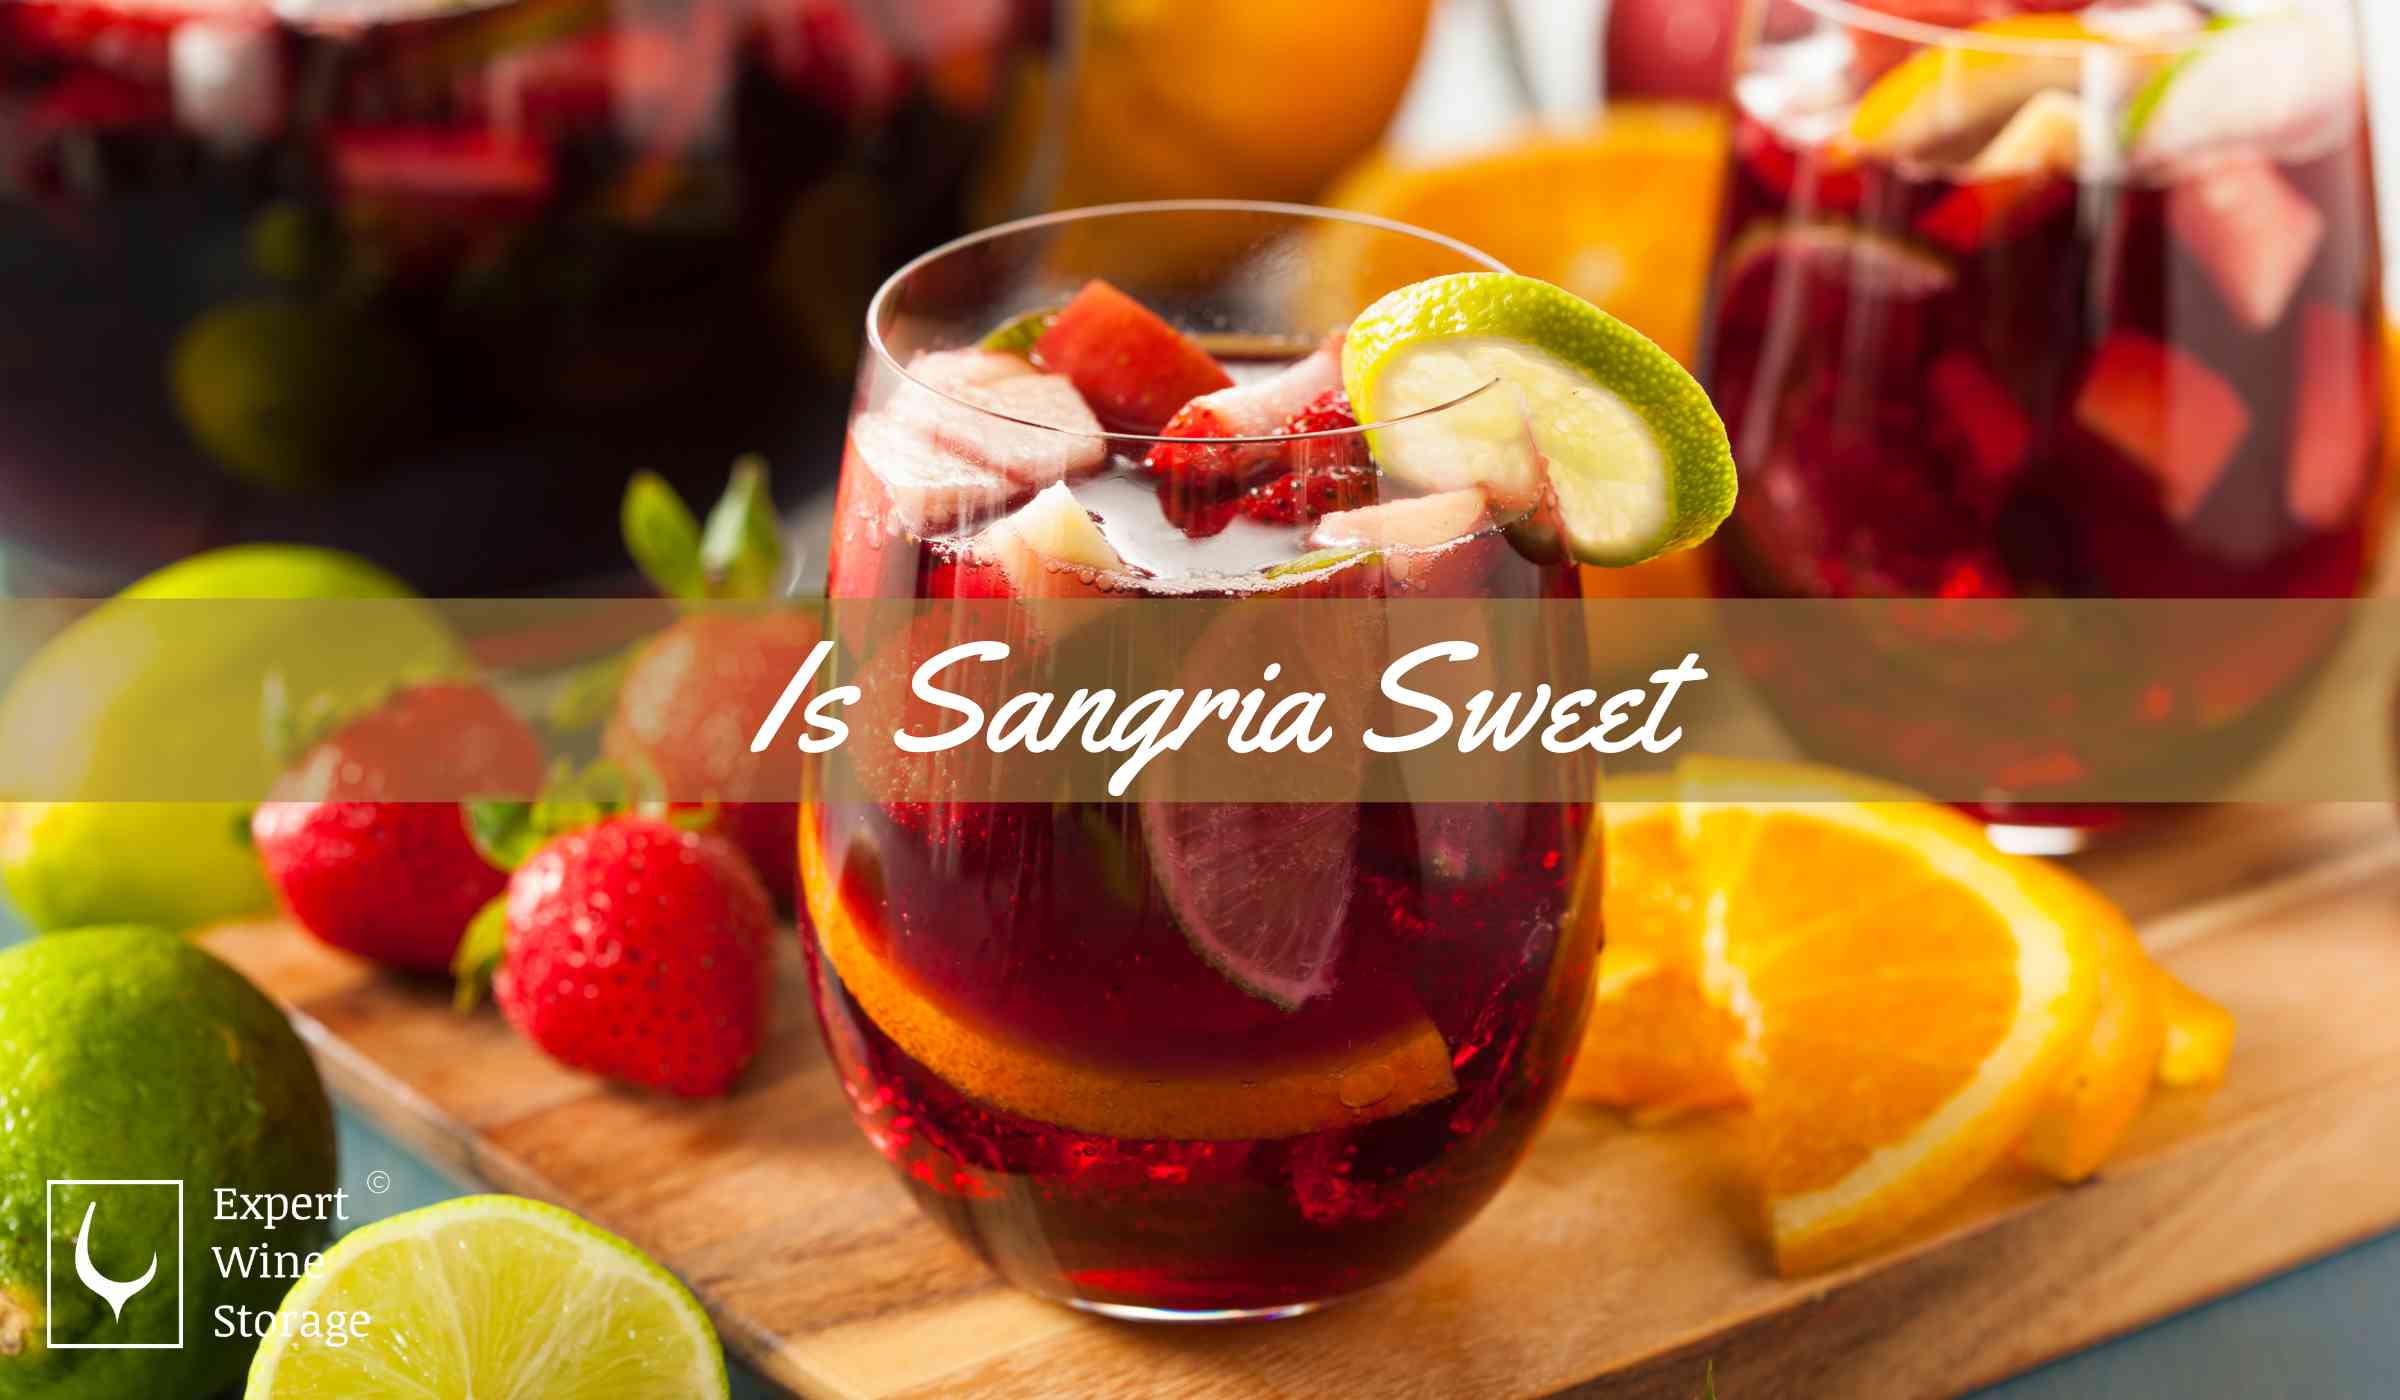 Is Sangria Sweet?